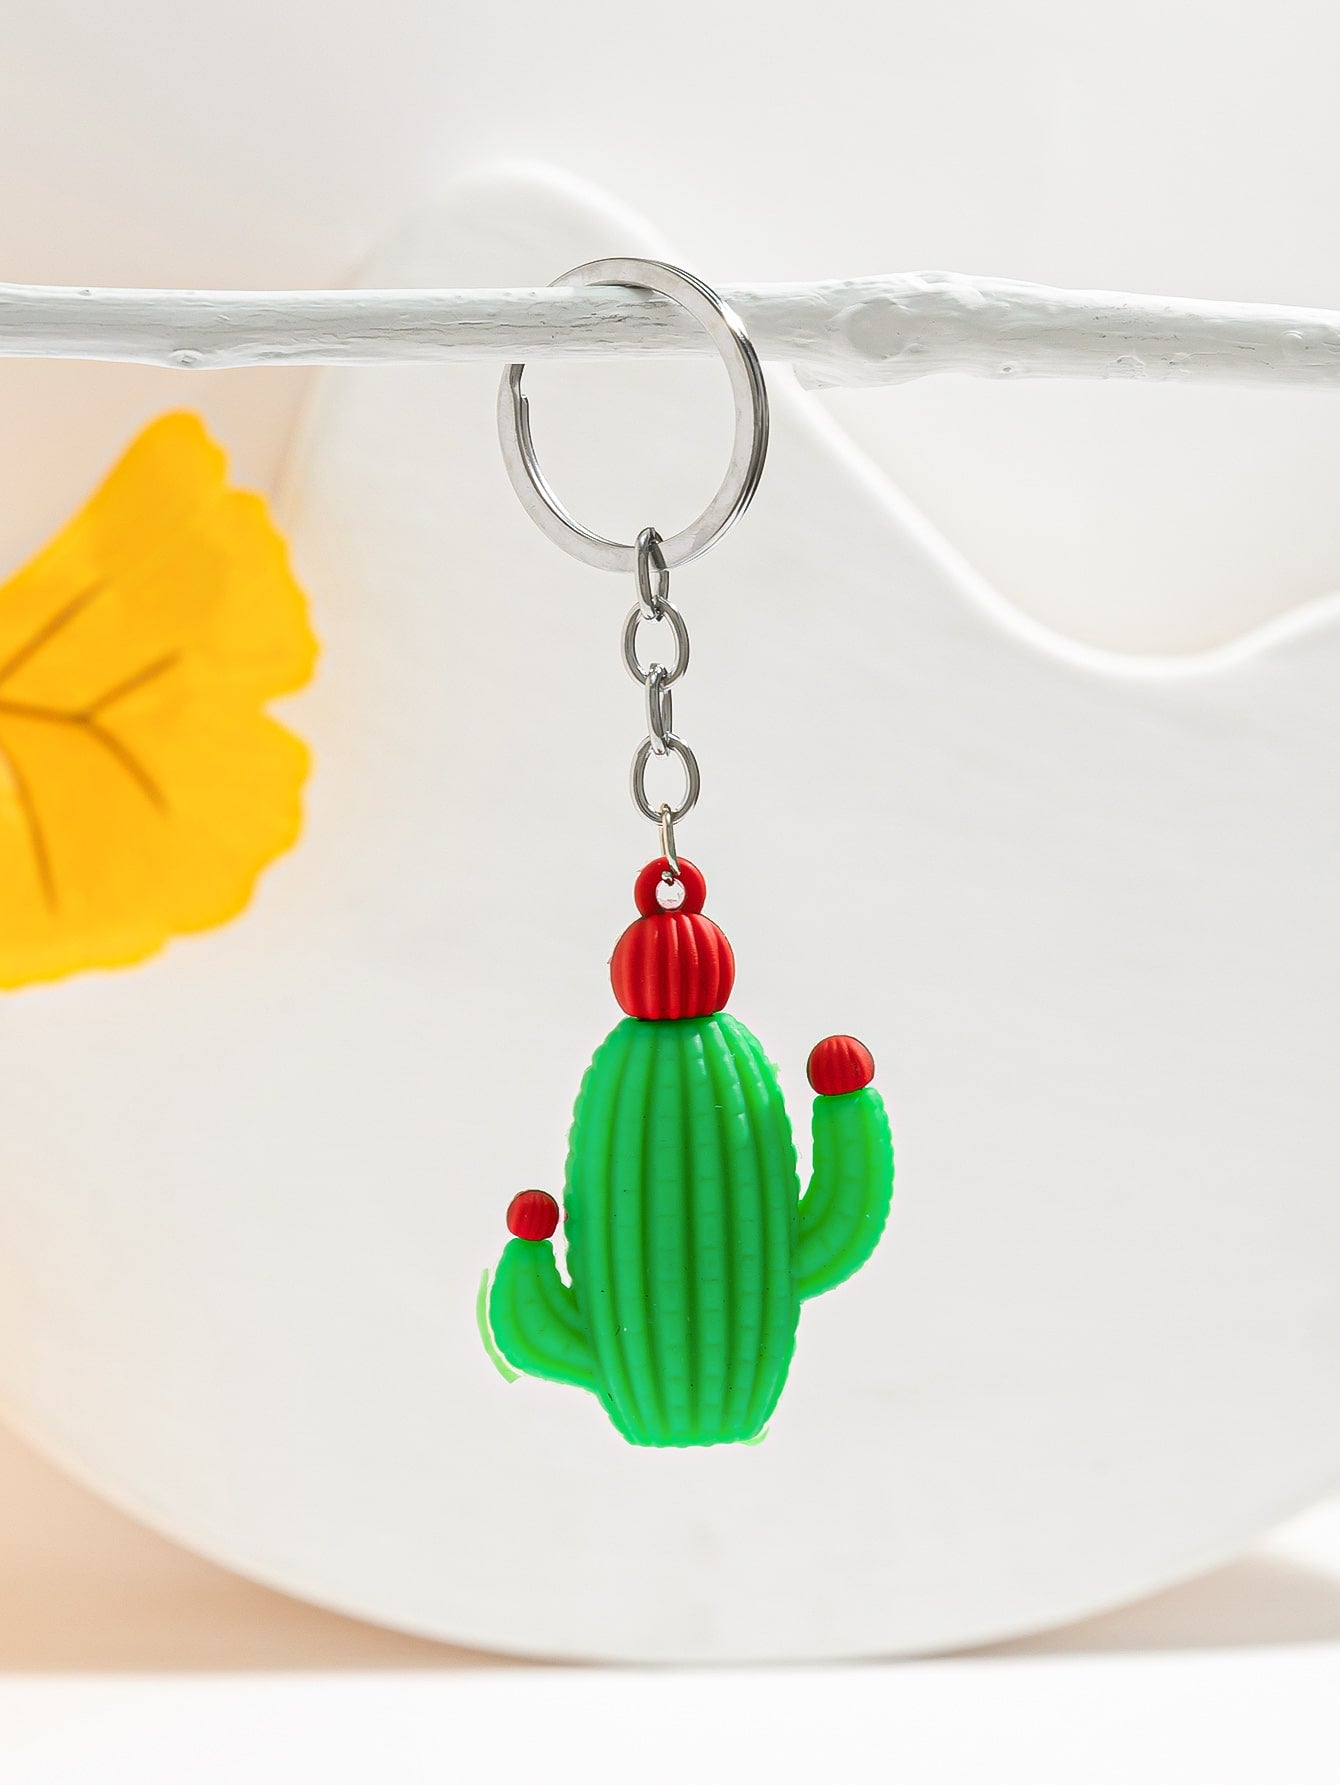 Cactus Charm Keychain